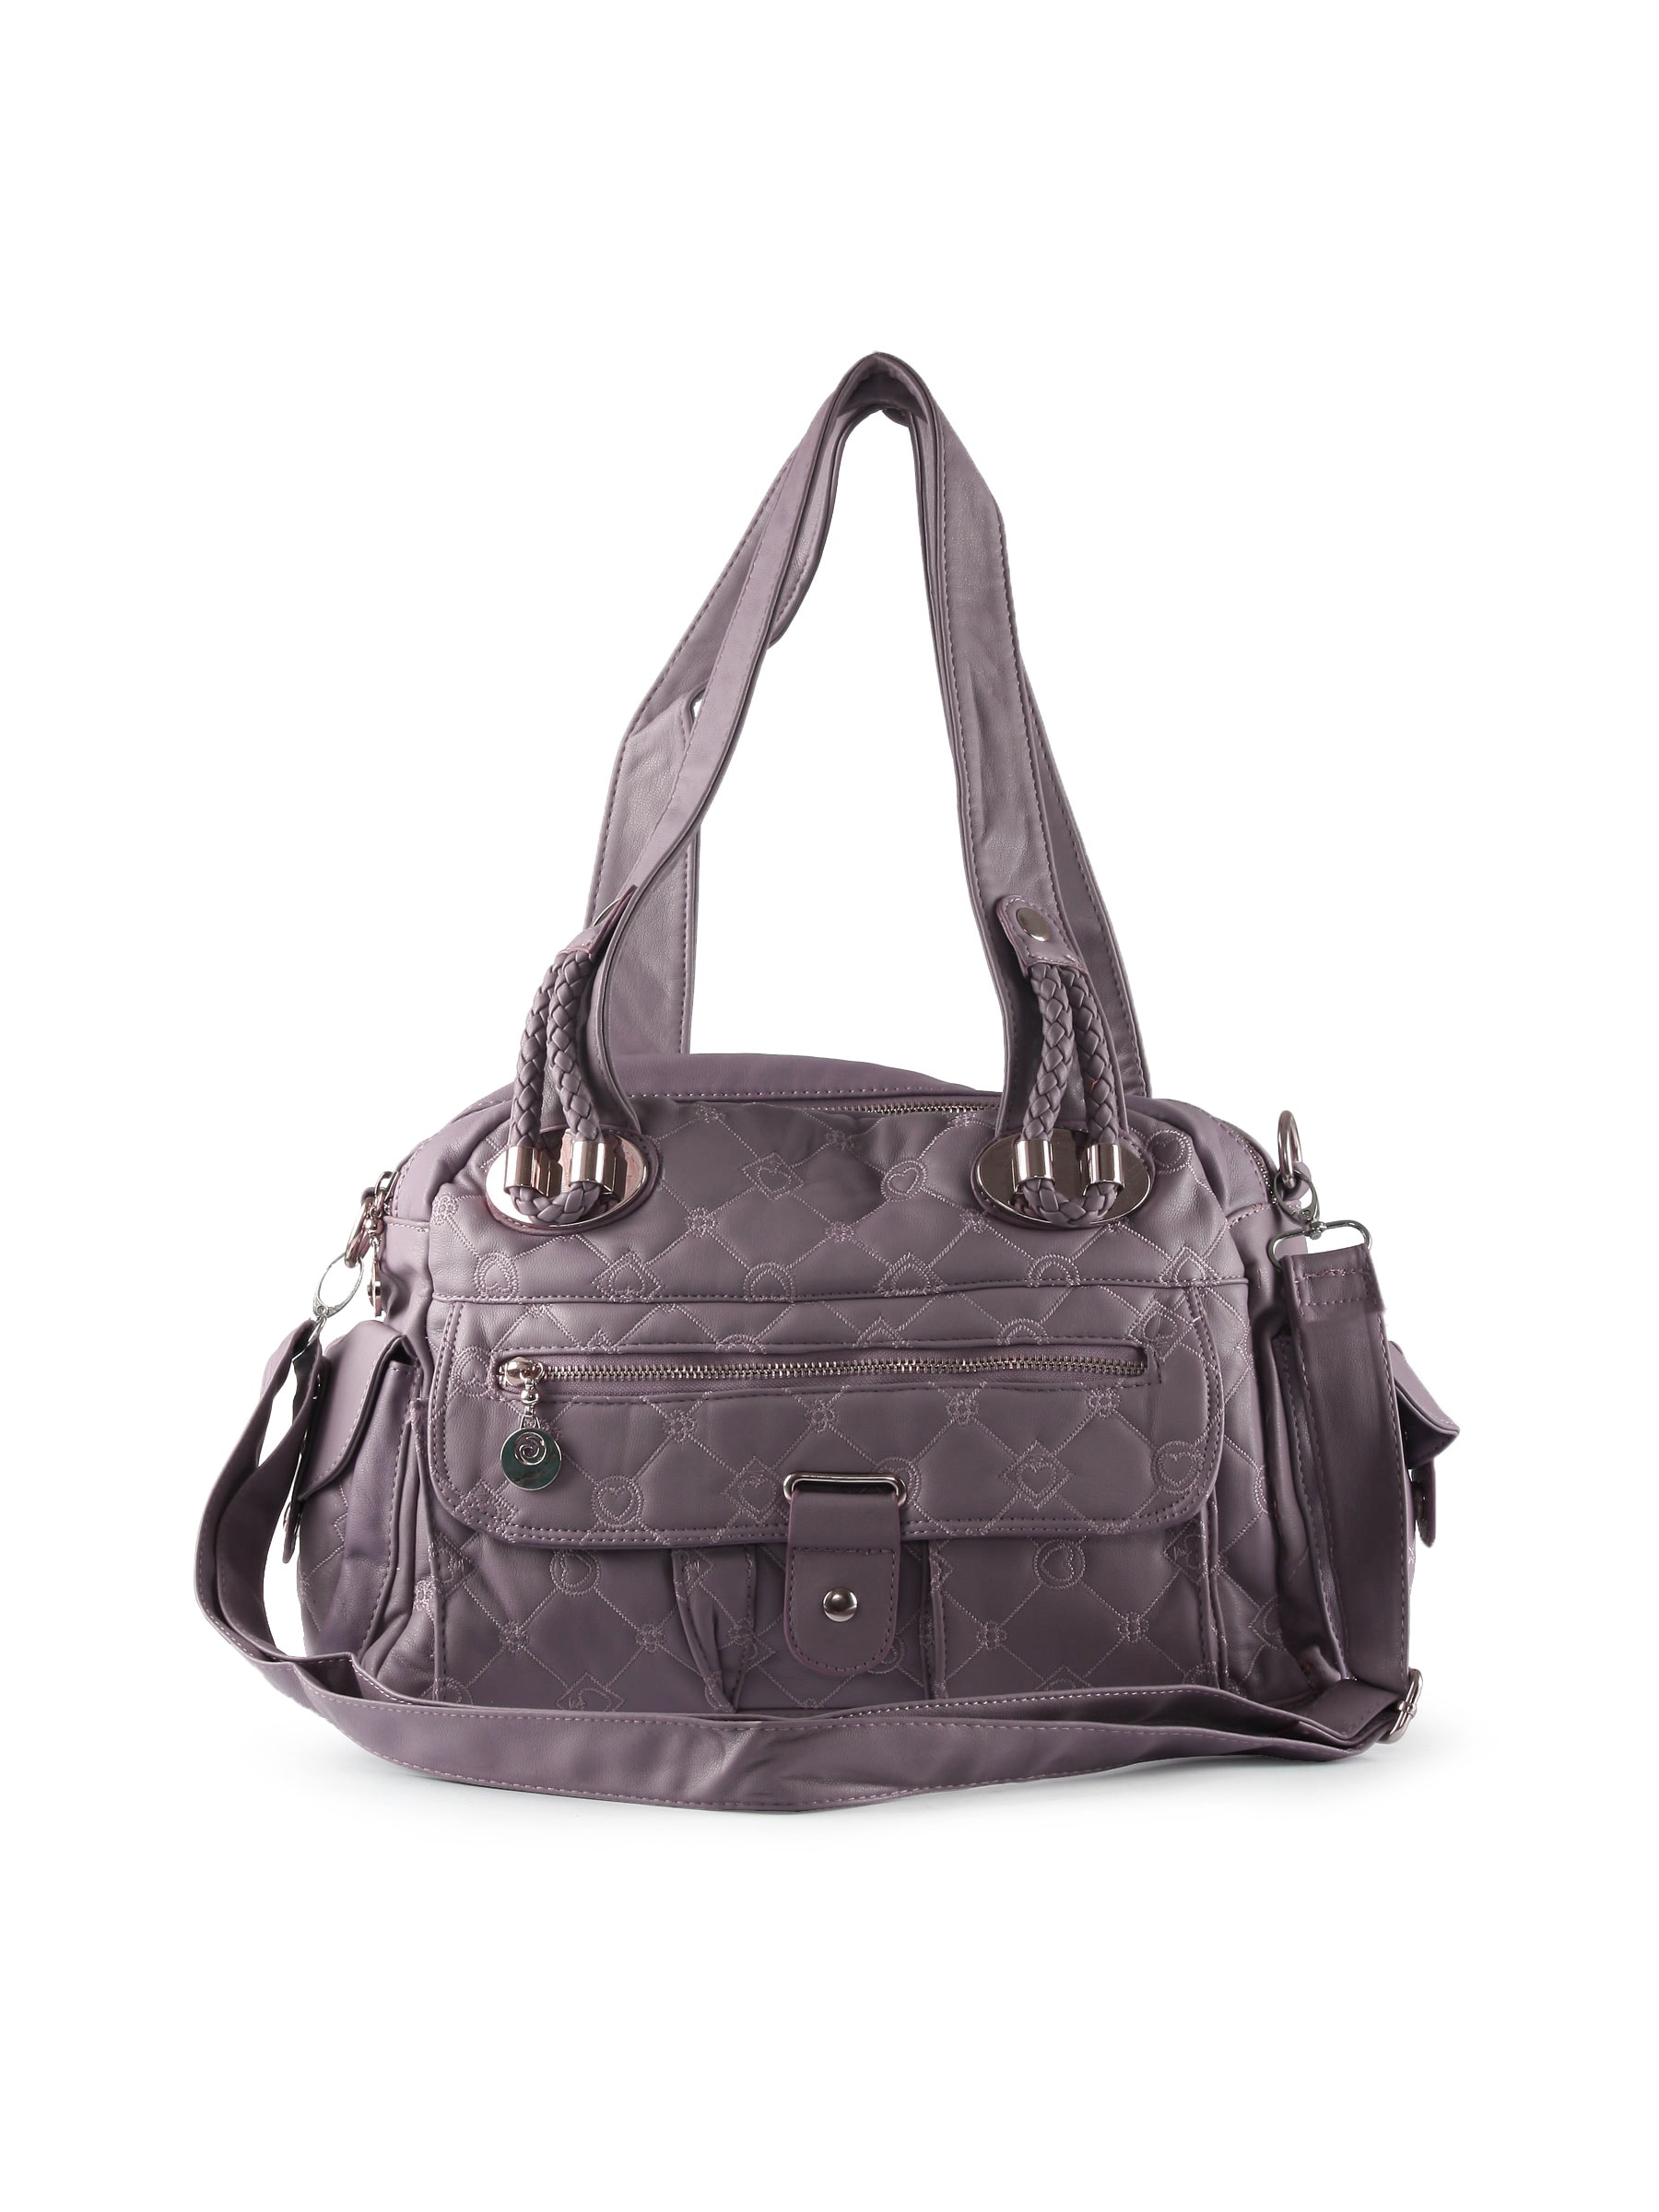 Kiara Women Small Pocket Purple Handbag